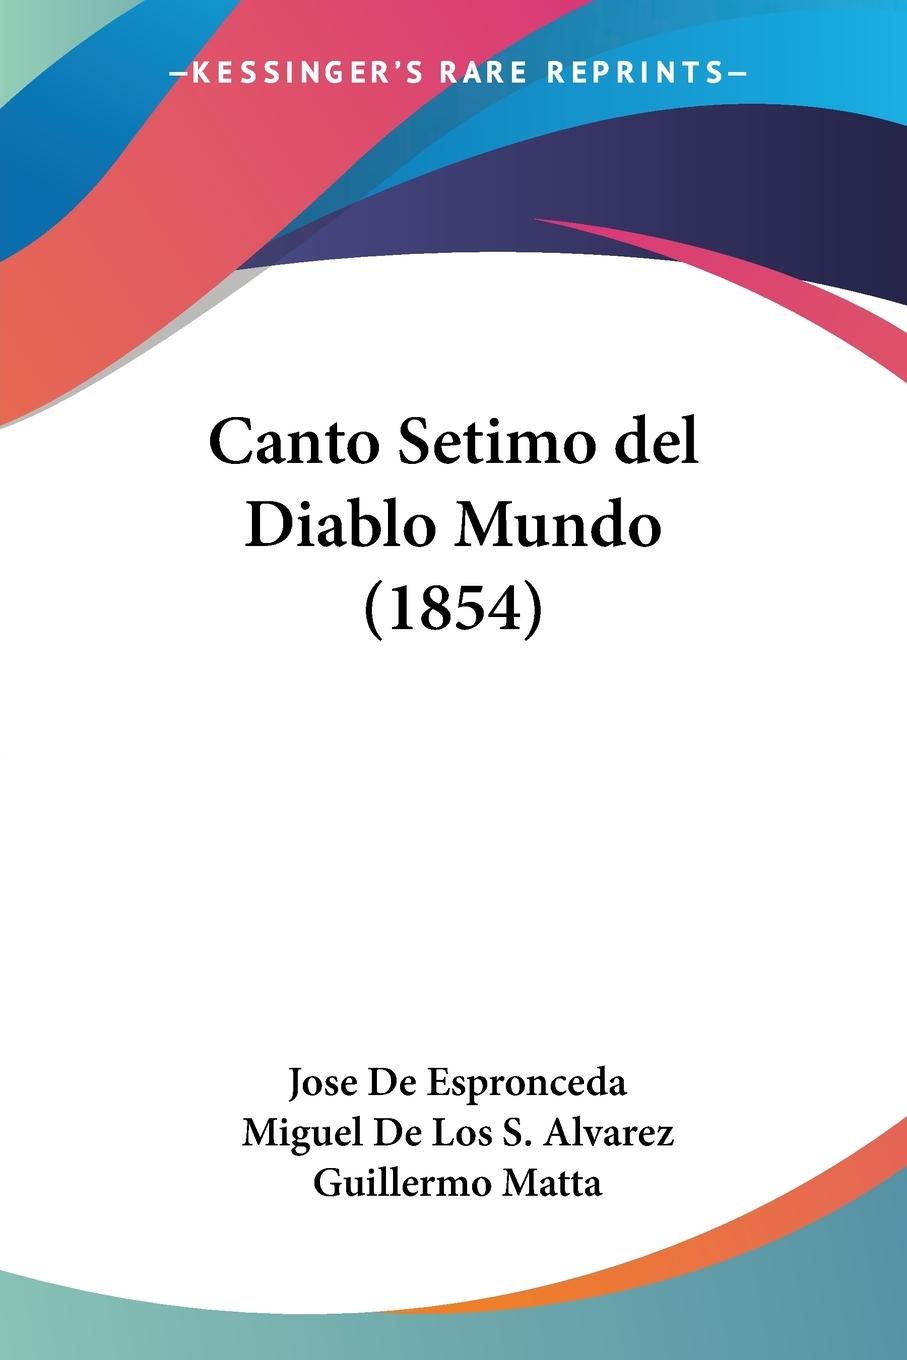 Canto Setimo del Diablo Mundo (1854) - De Espronceda, Jose Alvarez, Miguel De Los S.